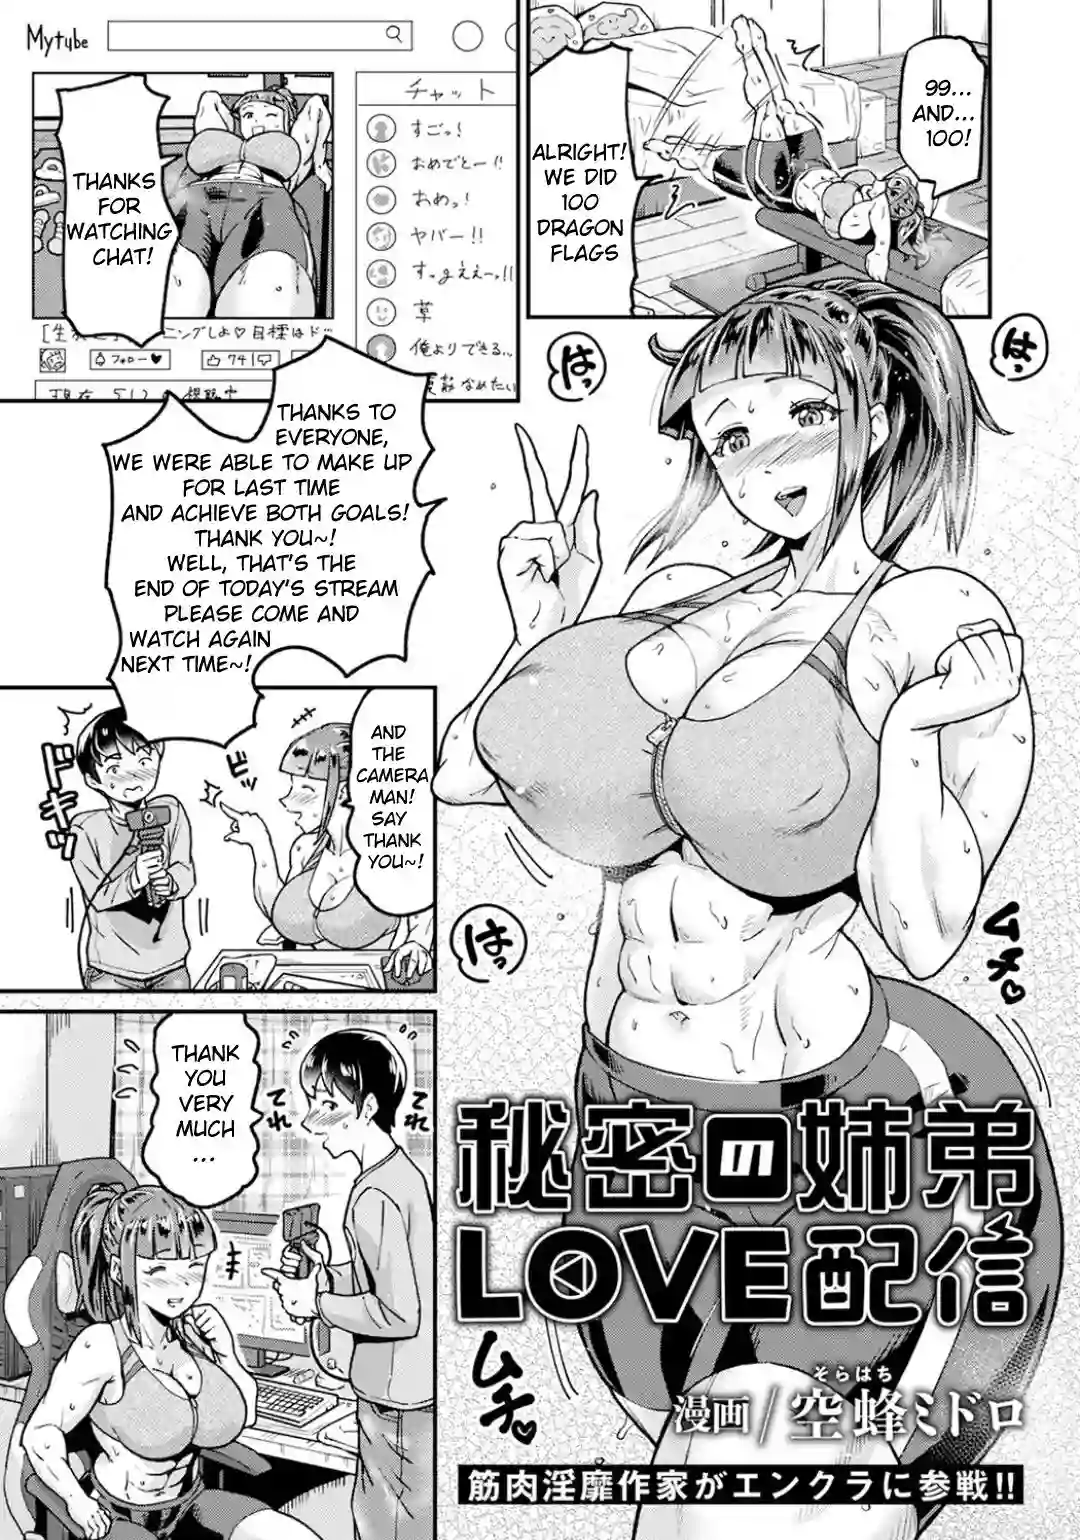 Порно манга аниме читать фото 28